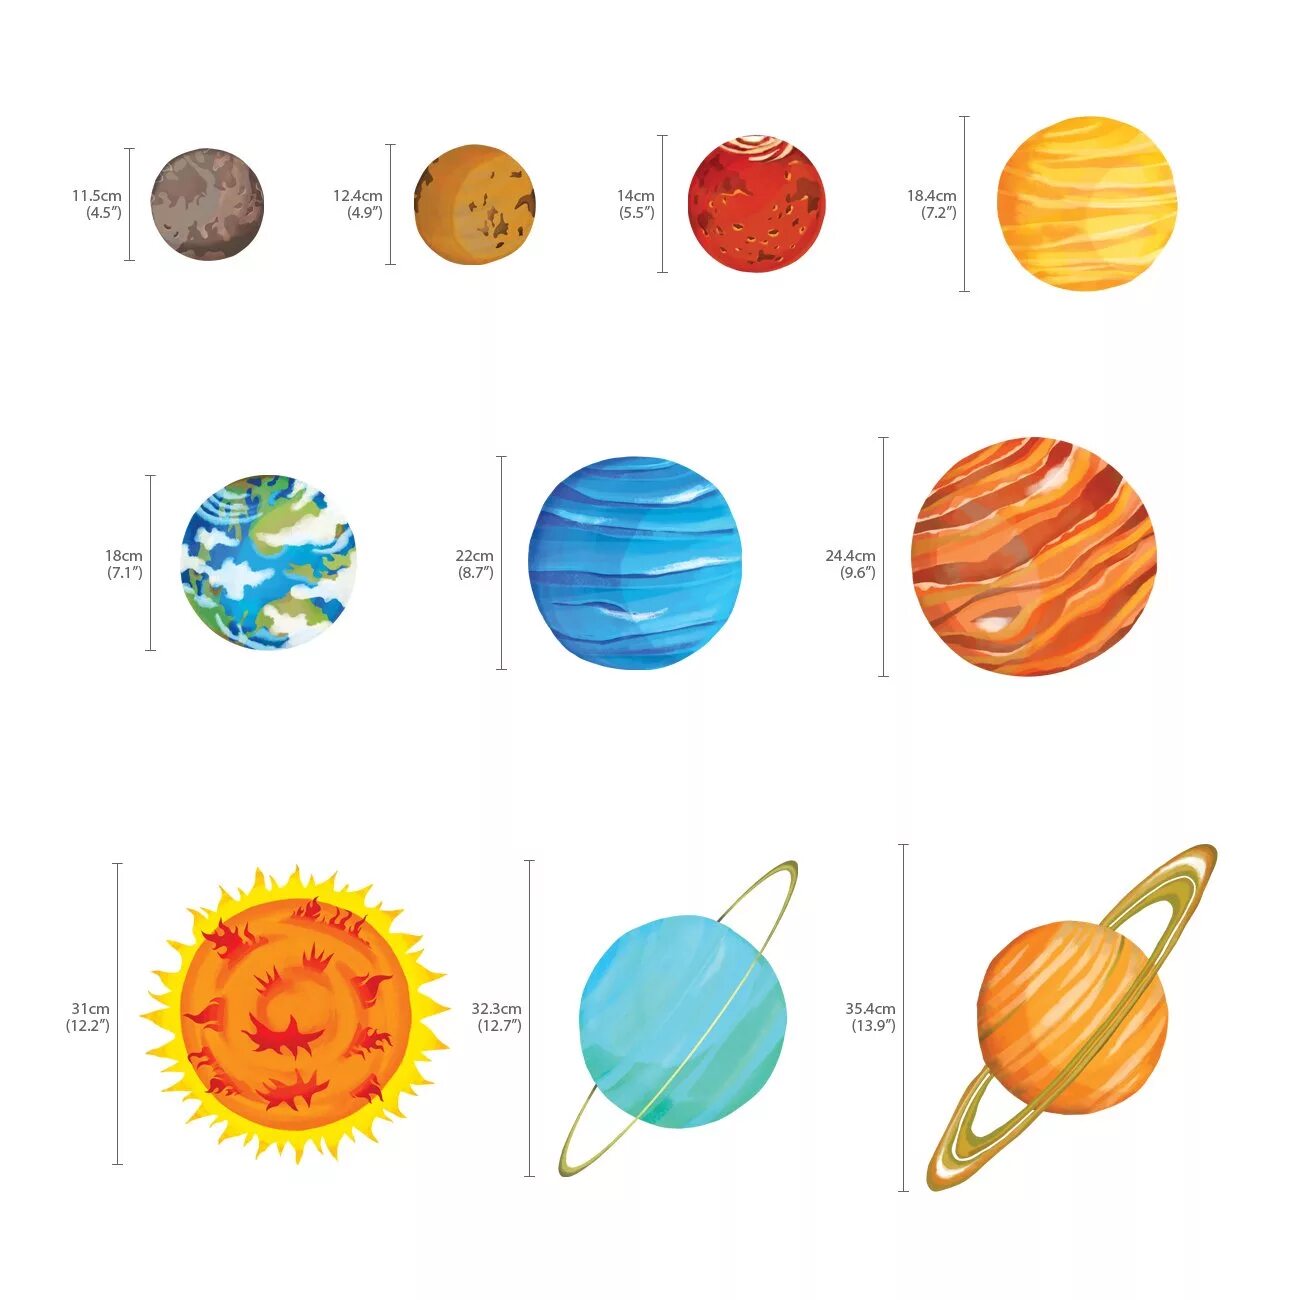 Планеты картинки для детей дошкольного возраста. Планеты солнечной системы по порядку от солнца с названиями макет. Планеты для дошкольников. Планеты солнечной системы для детей. Название планет для детей.